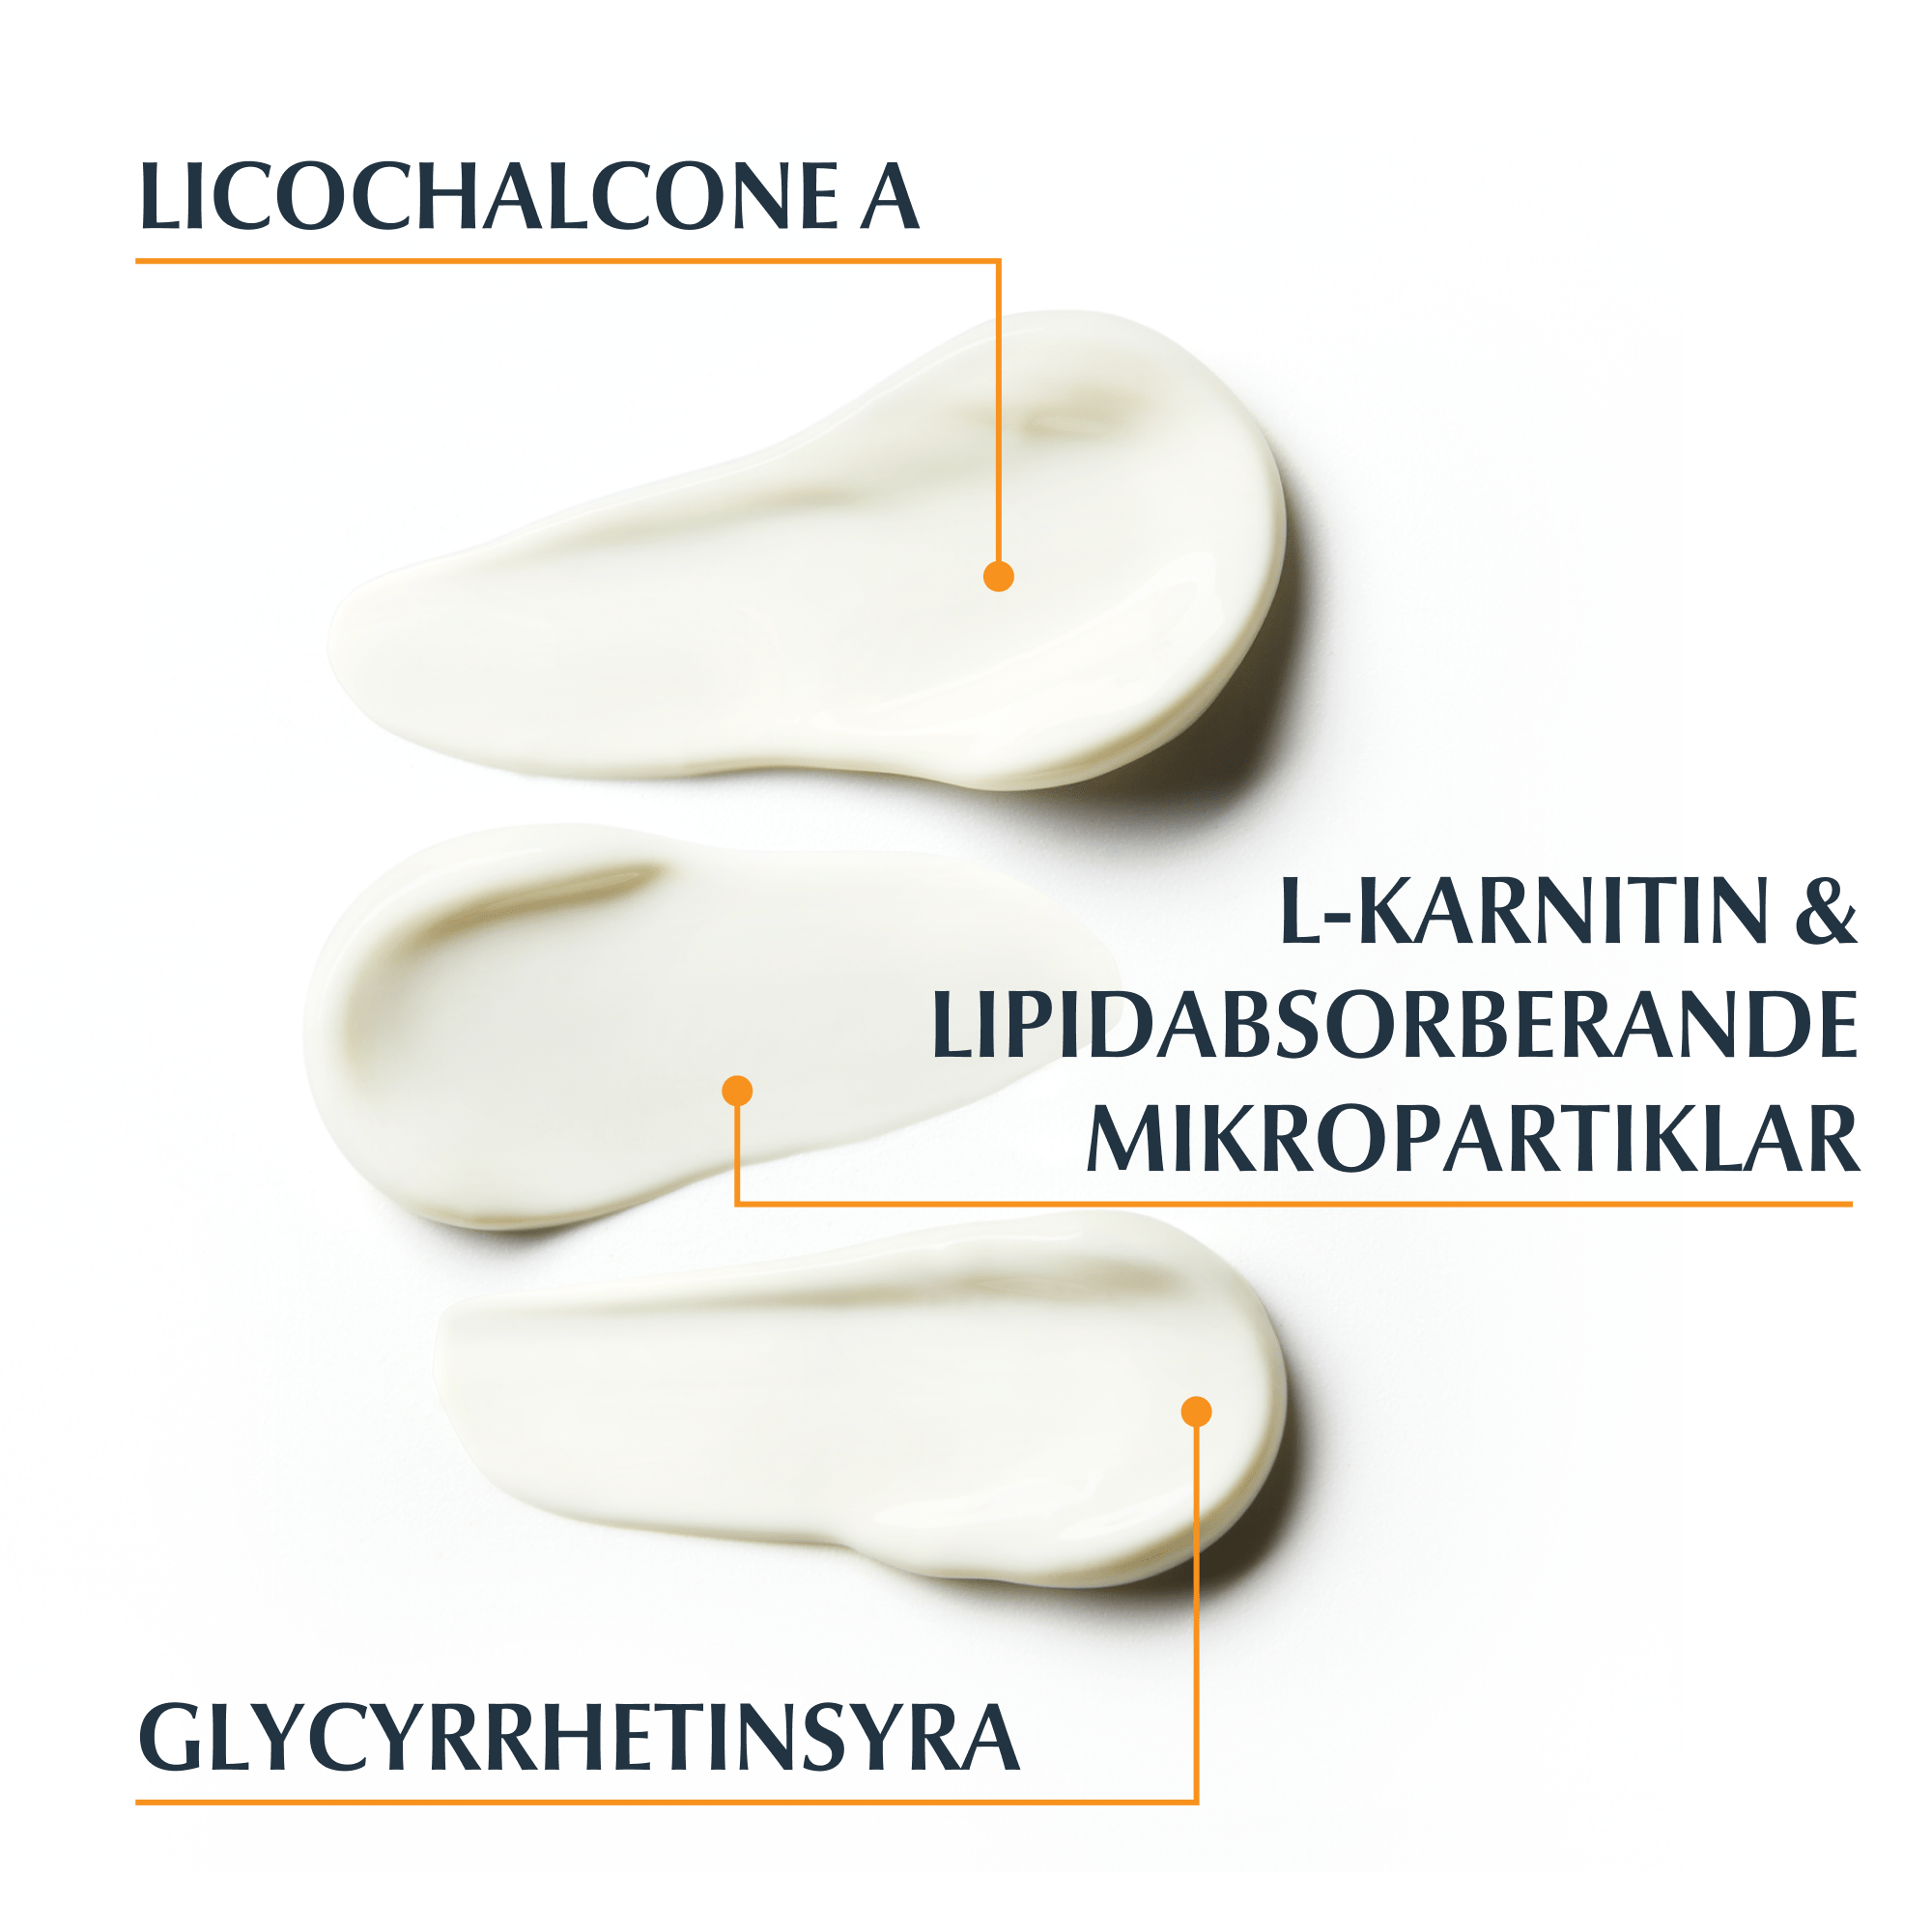 Bild på konsistens och aktiva ingredienser för Eucerin Sun Oil Control  SPF 50+, Licochalcone A, l-karnitin och lipidabsorberande mikropartiklar, glycrrhetinsyra